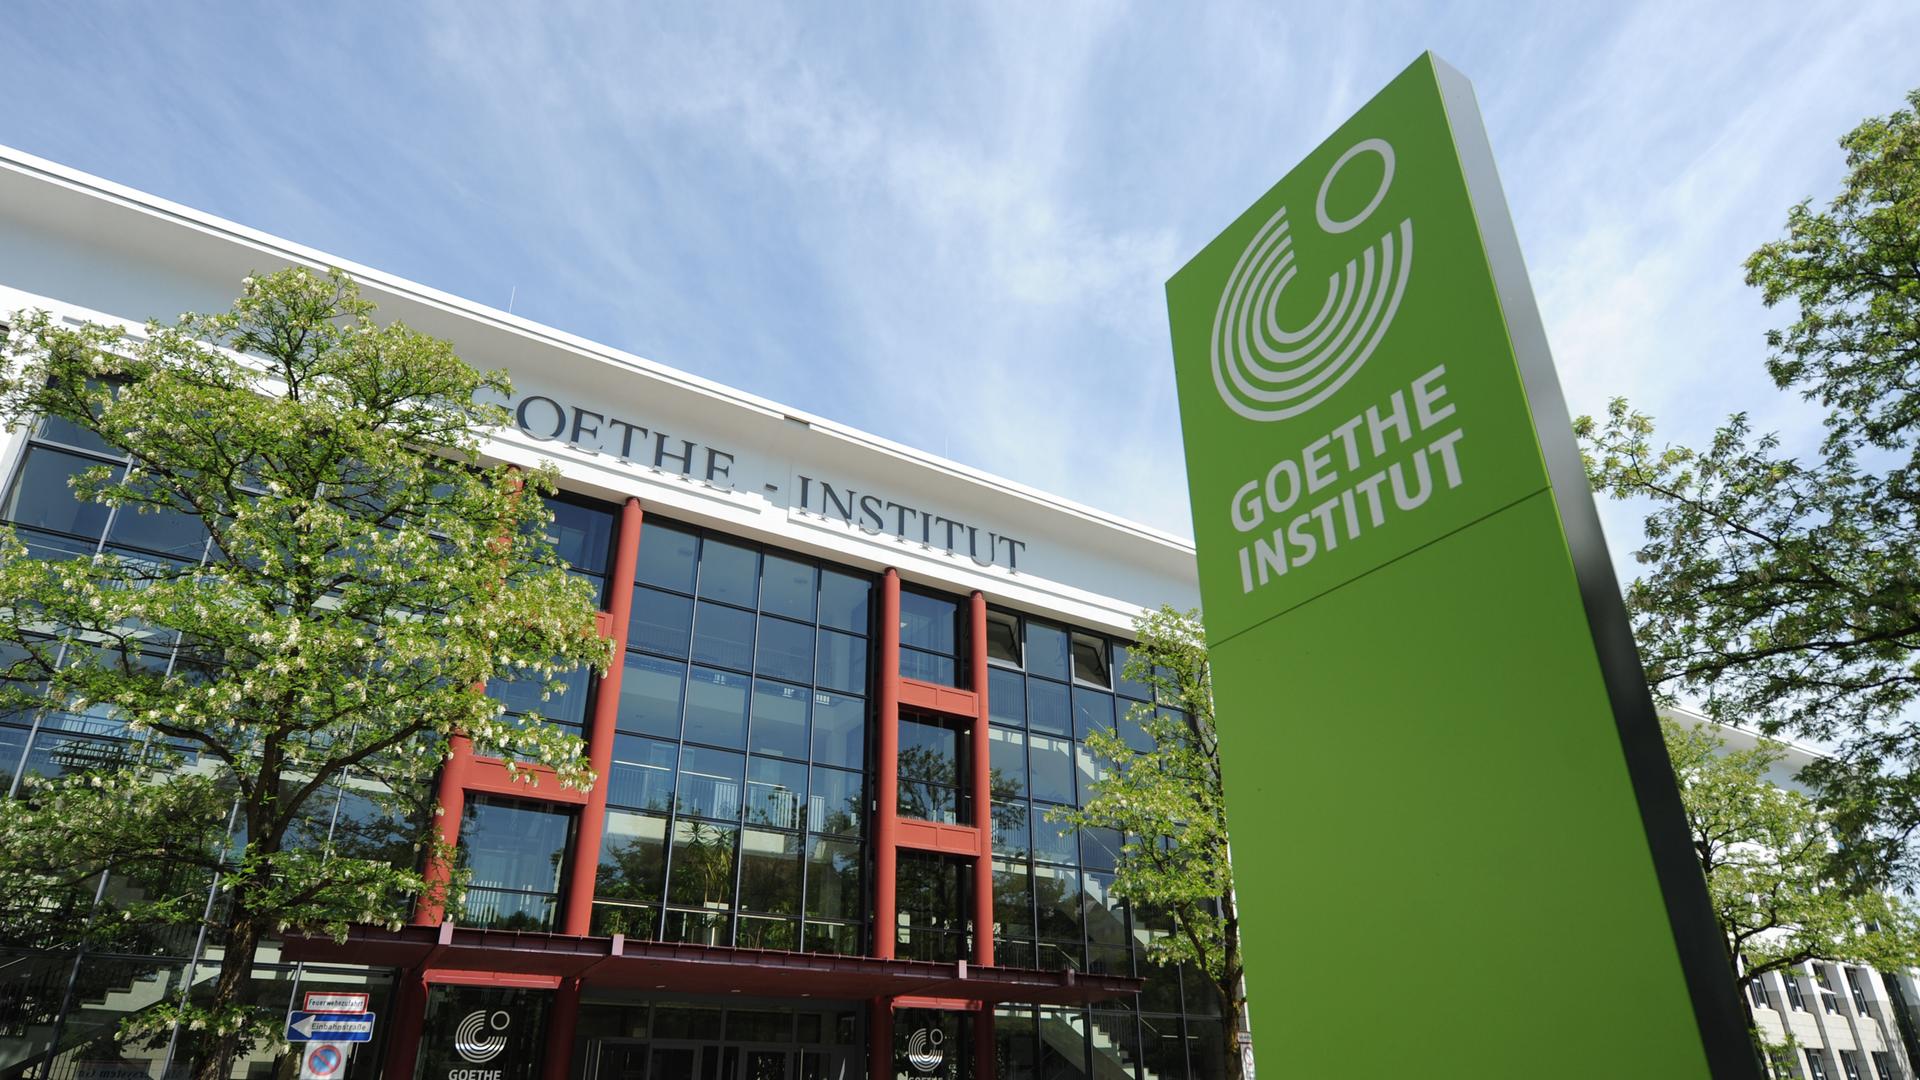 An der Zentrale des Goethe-Instituts in der Dachauer Straße 122 in München prangt oben ein Schriftzug "Goethe-Institut", vor dem Gebäude und im Bild rechts steht eine grünes Stele mit der Aufschrift "Goethe Institut" und dem Logo der Organisation, fünf Kreisen über 270 Grad, in der Aussparung oben rechts ist ein kleinerer Kreis kompett.